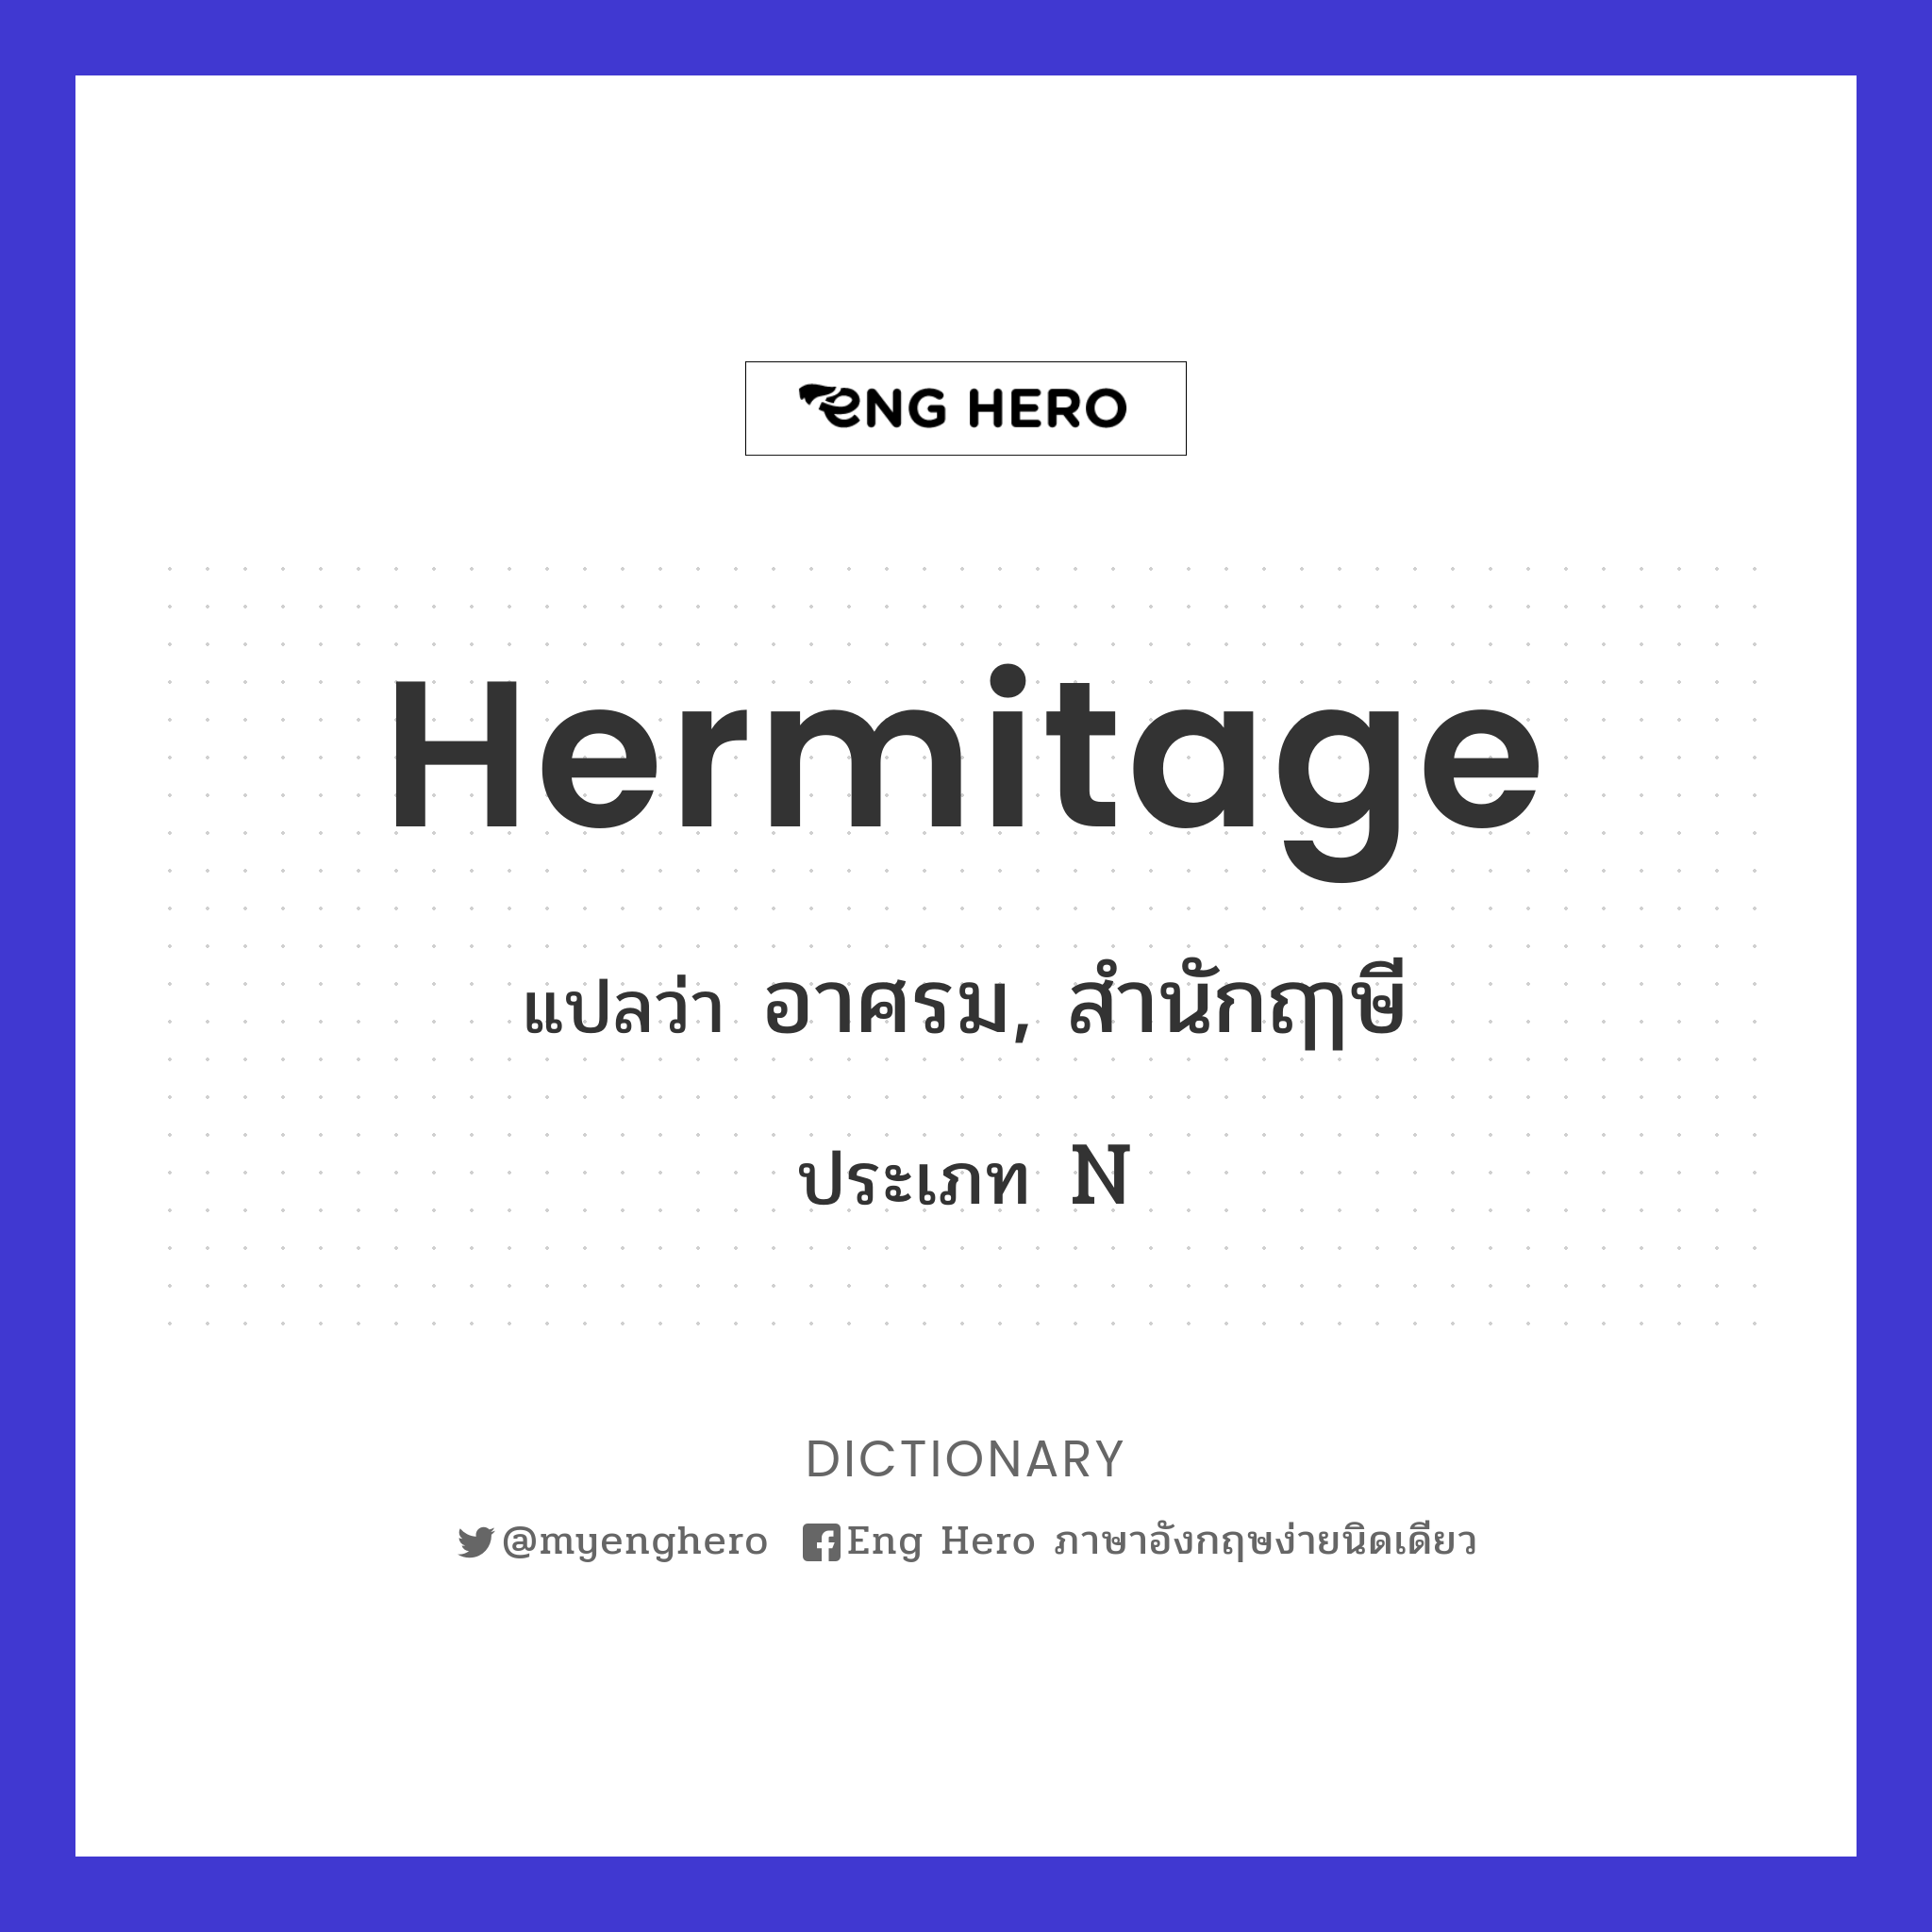 hermitage